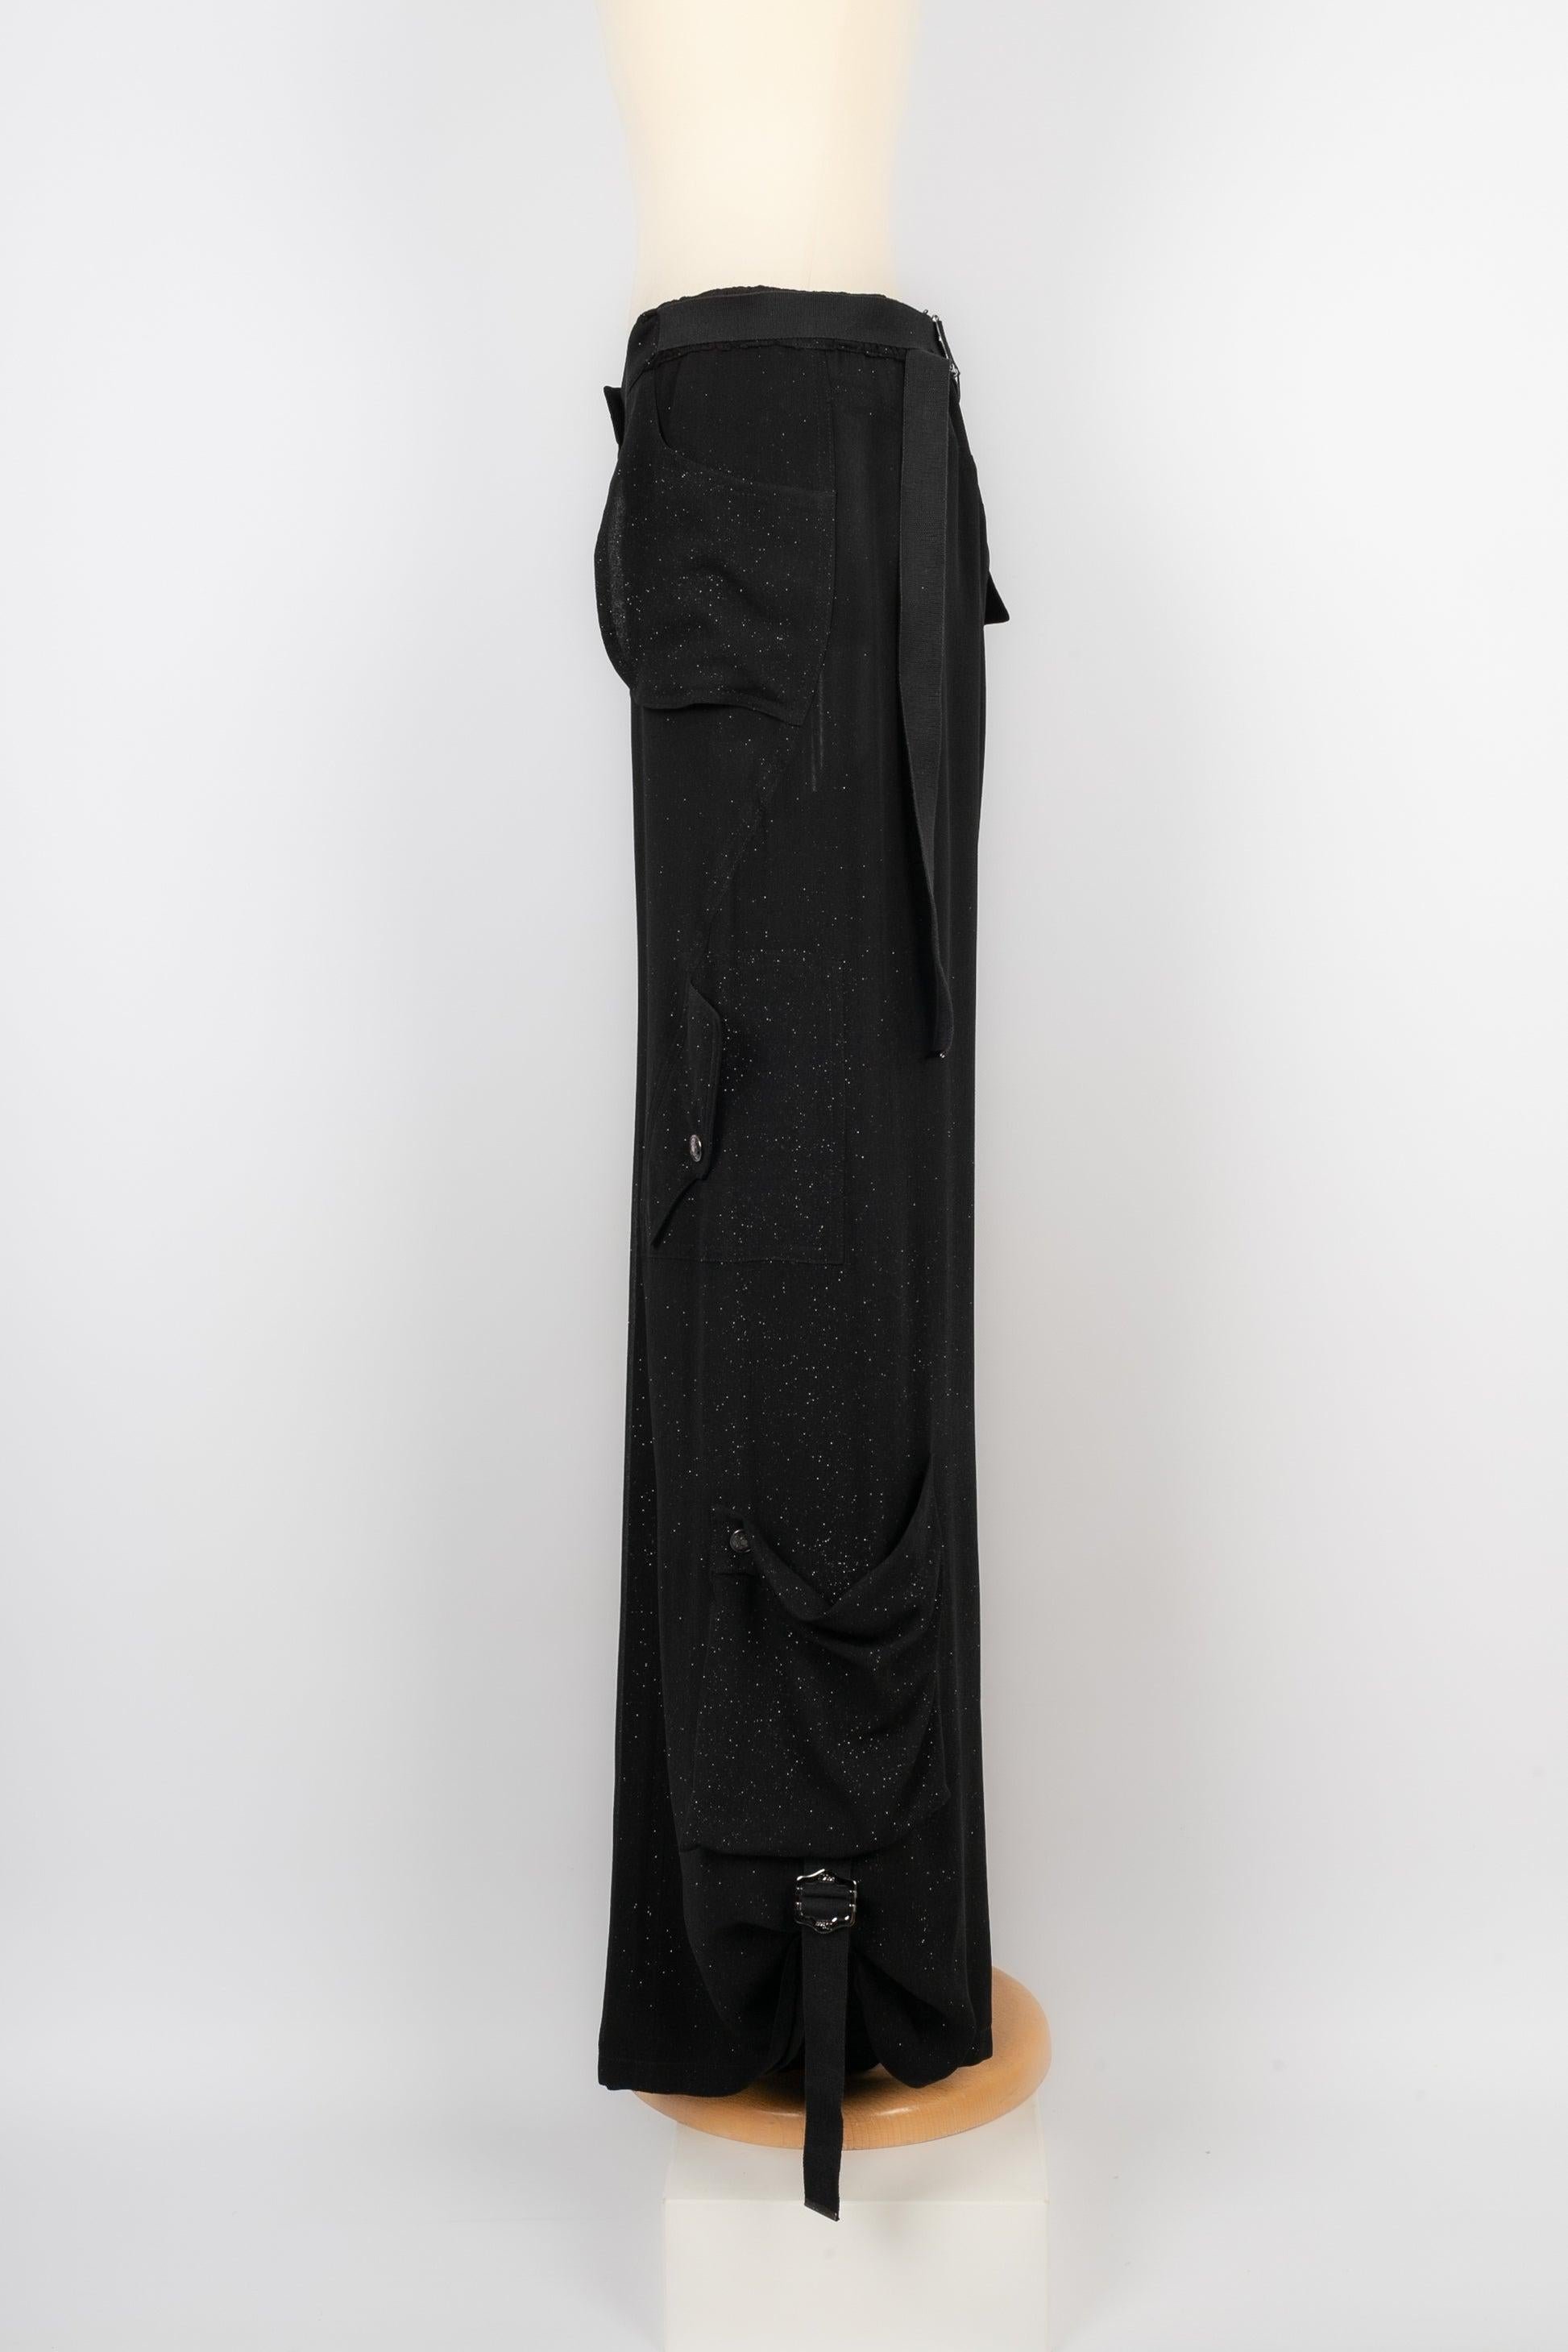 Dior- (Made in France) Paillettenbesetzte schwarze Seidenhose. Herbst-Winter Collection'S 2003. Größe 38FR.

Zusätzliche Informationen:
Zustand: Sehr guter Zustand
Abmessungen: Taille: 39 cm - Länge: 105 cm
Sellers Referenz: FJ84
